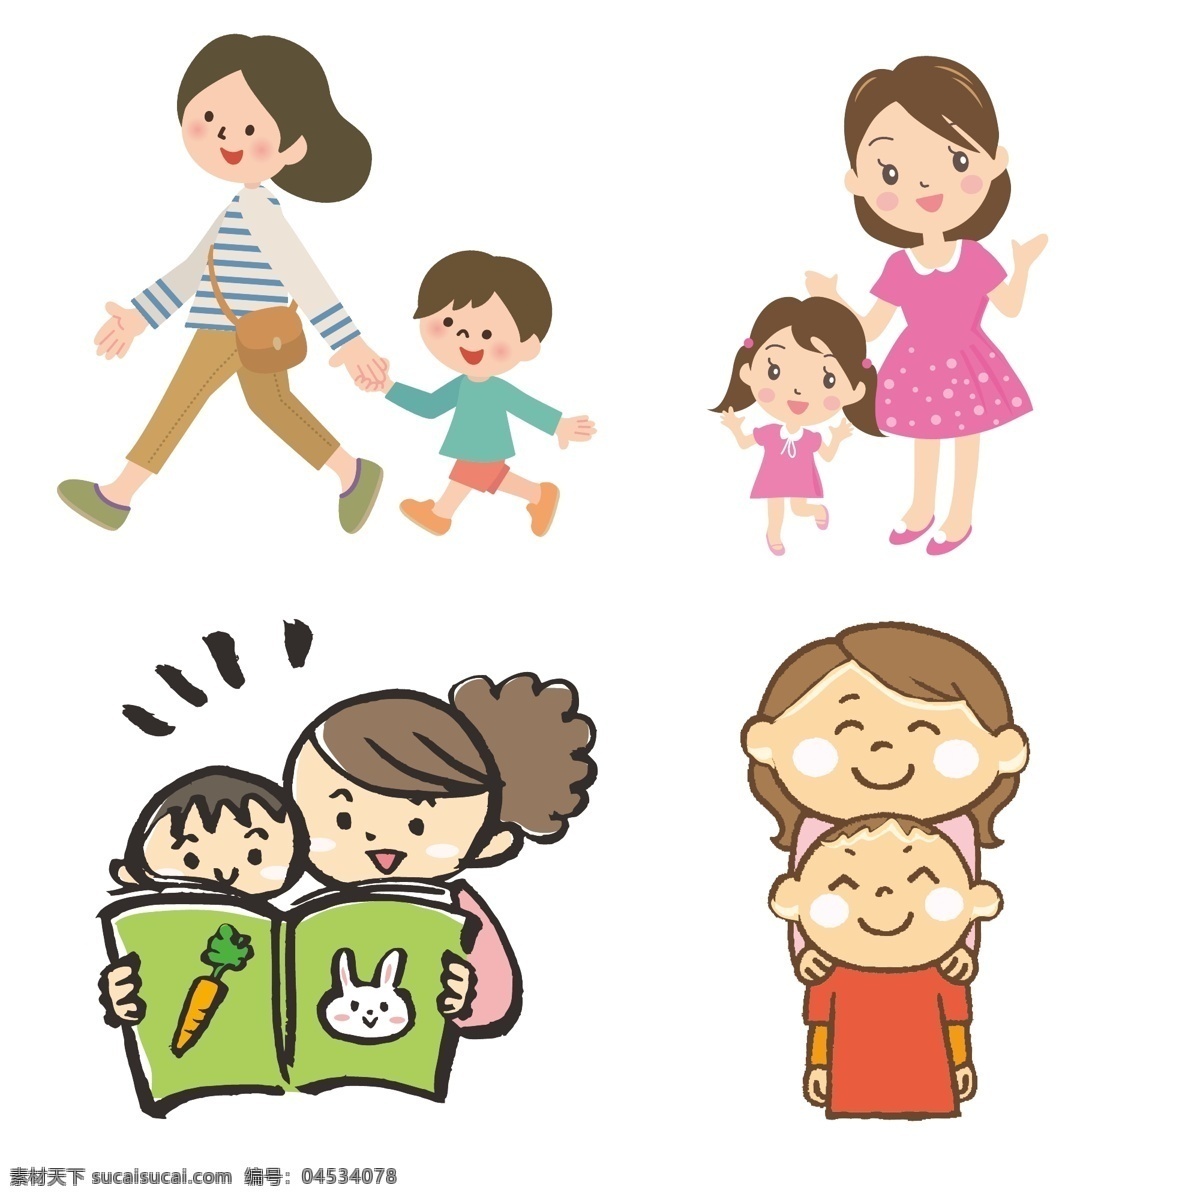 母亲 孩子 母亲与孩子 妈妈 小男孩 小女孩 散步 阅读 动漫卡通插图 动漫动画